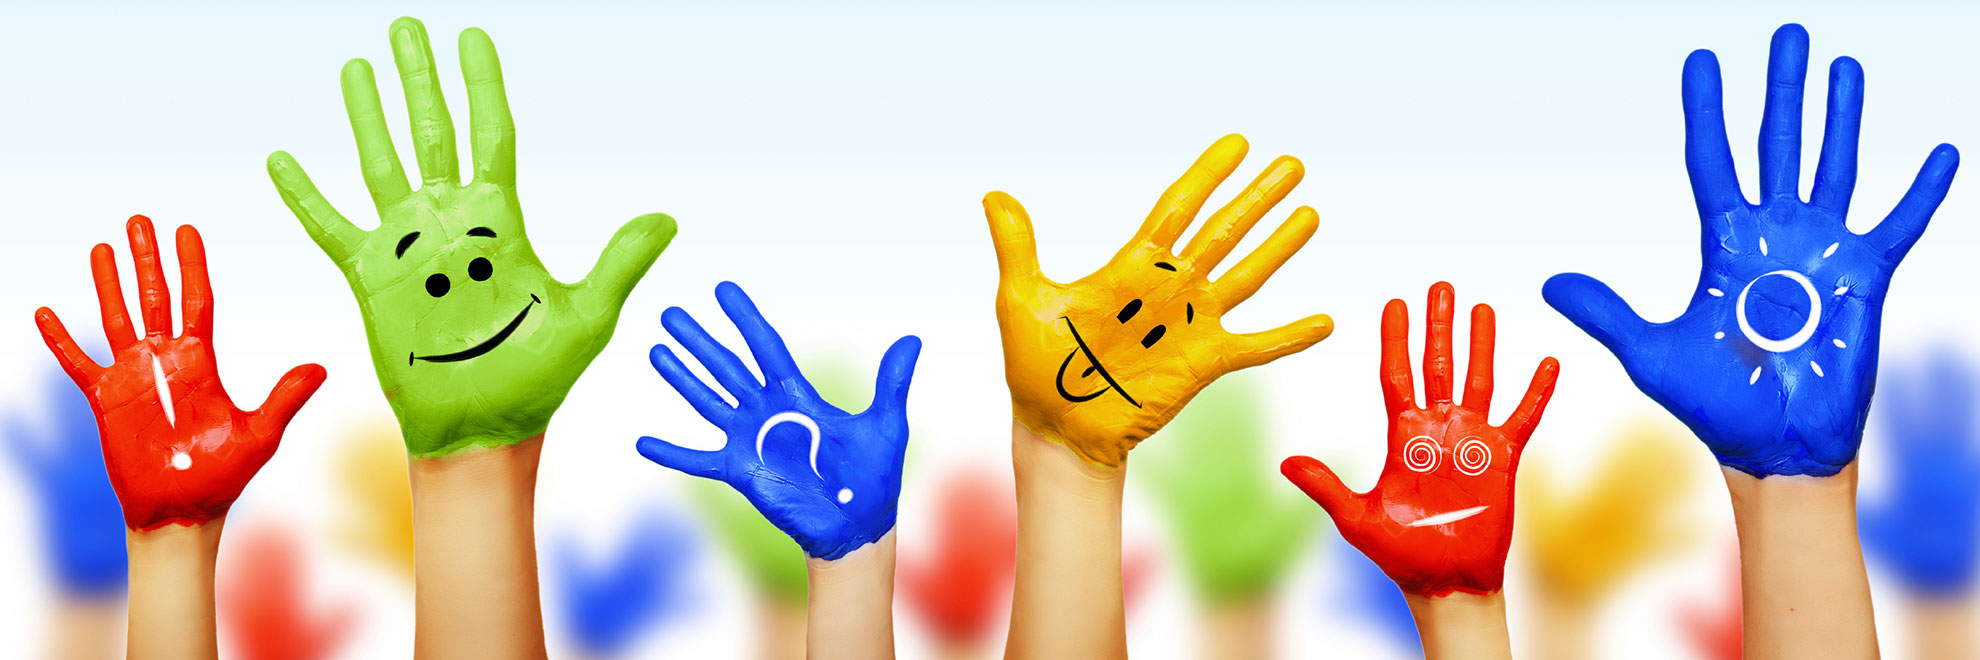 multicolor hands